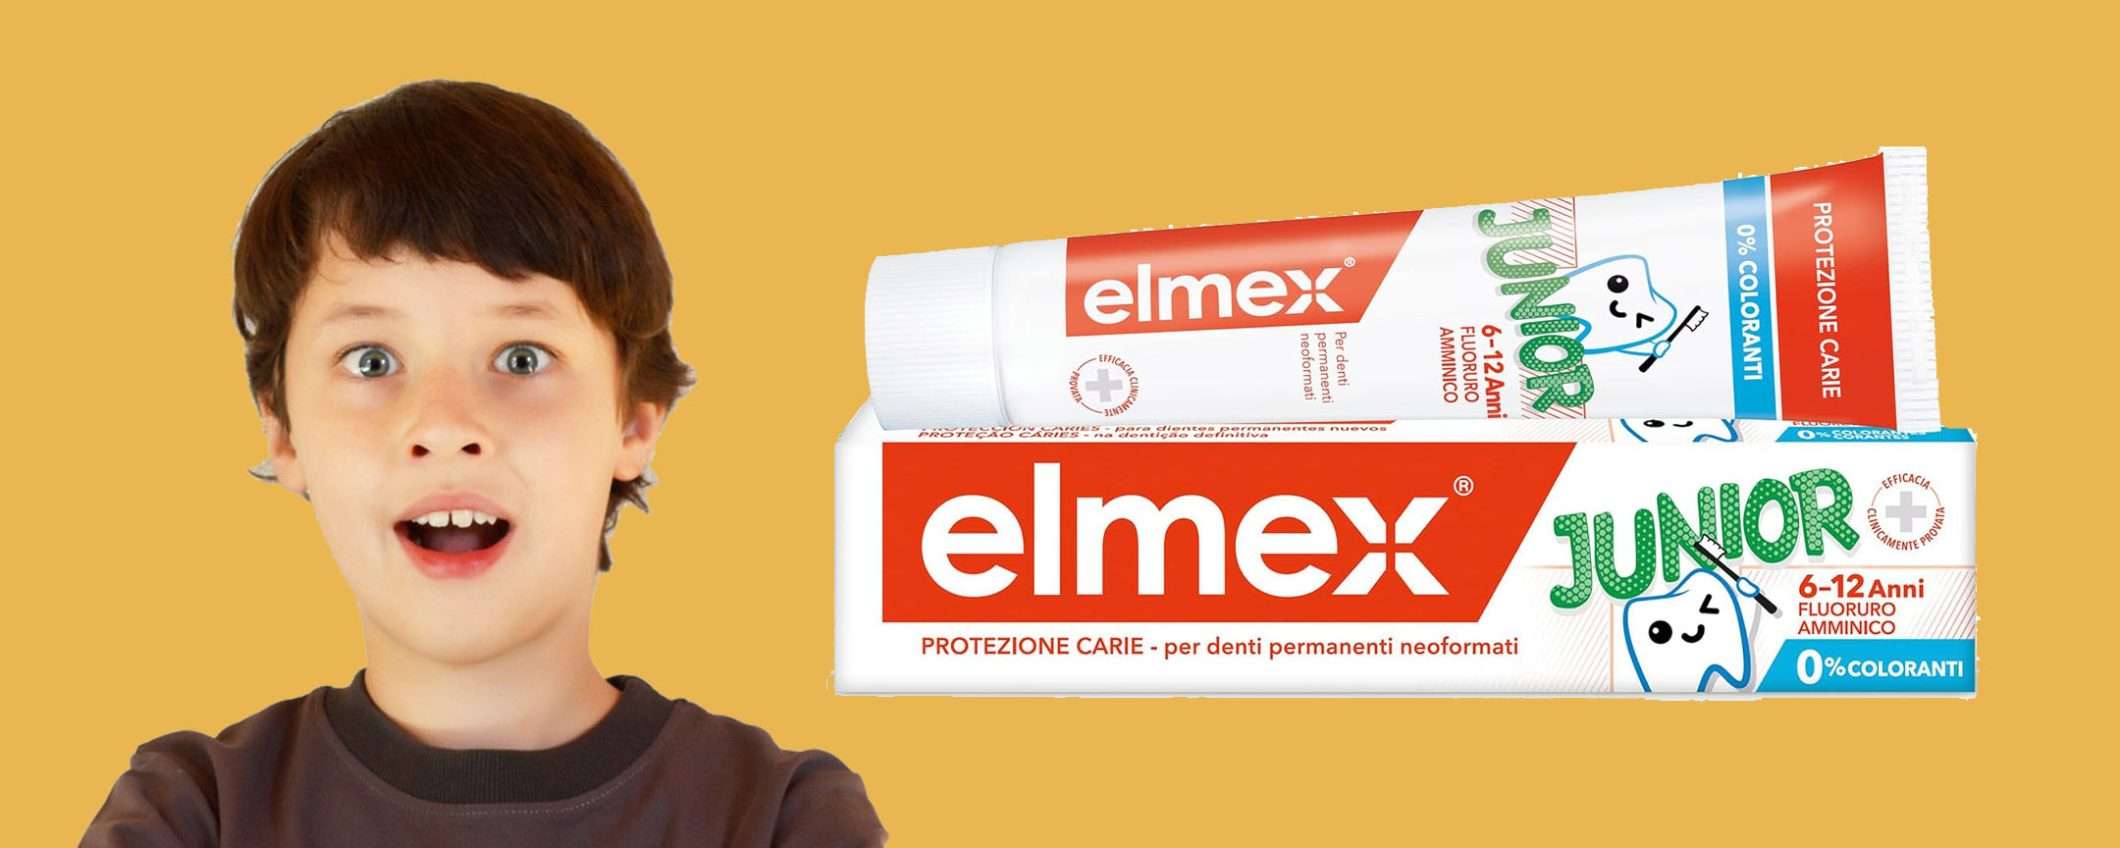 Dentifricio Junior Elmex anticarie in offerta WOW: sconto del 31%